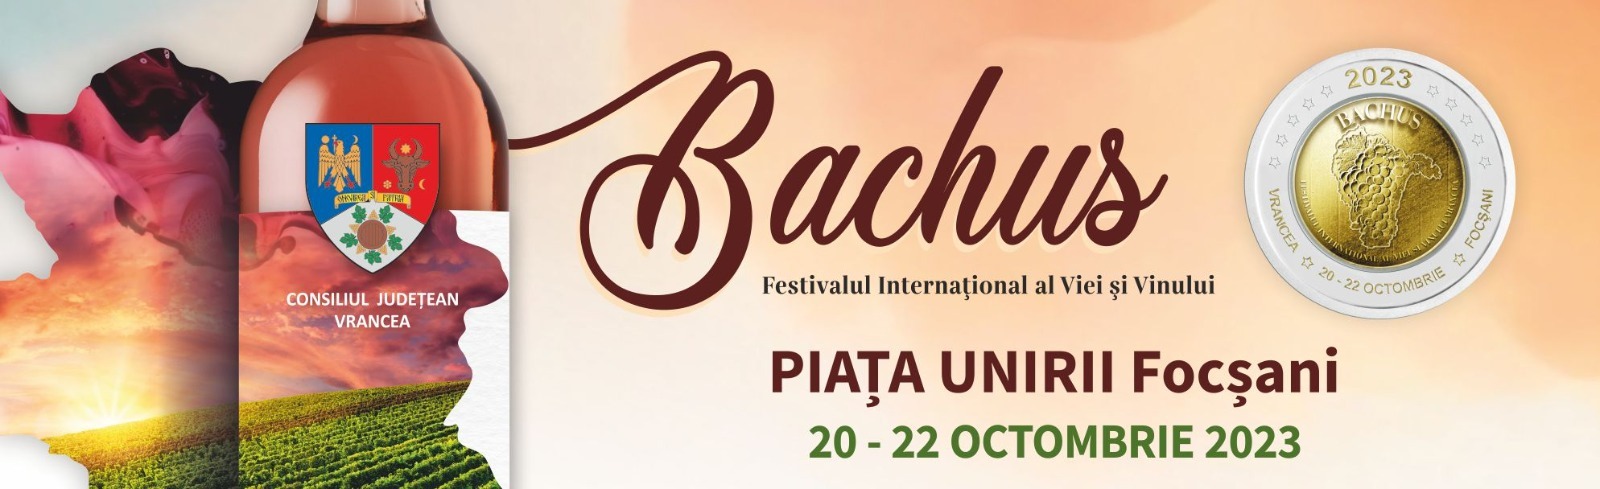 Festivalul Internațional al Viei și Vinului Vrancea – Bachus 2023